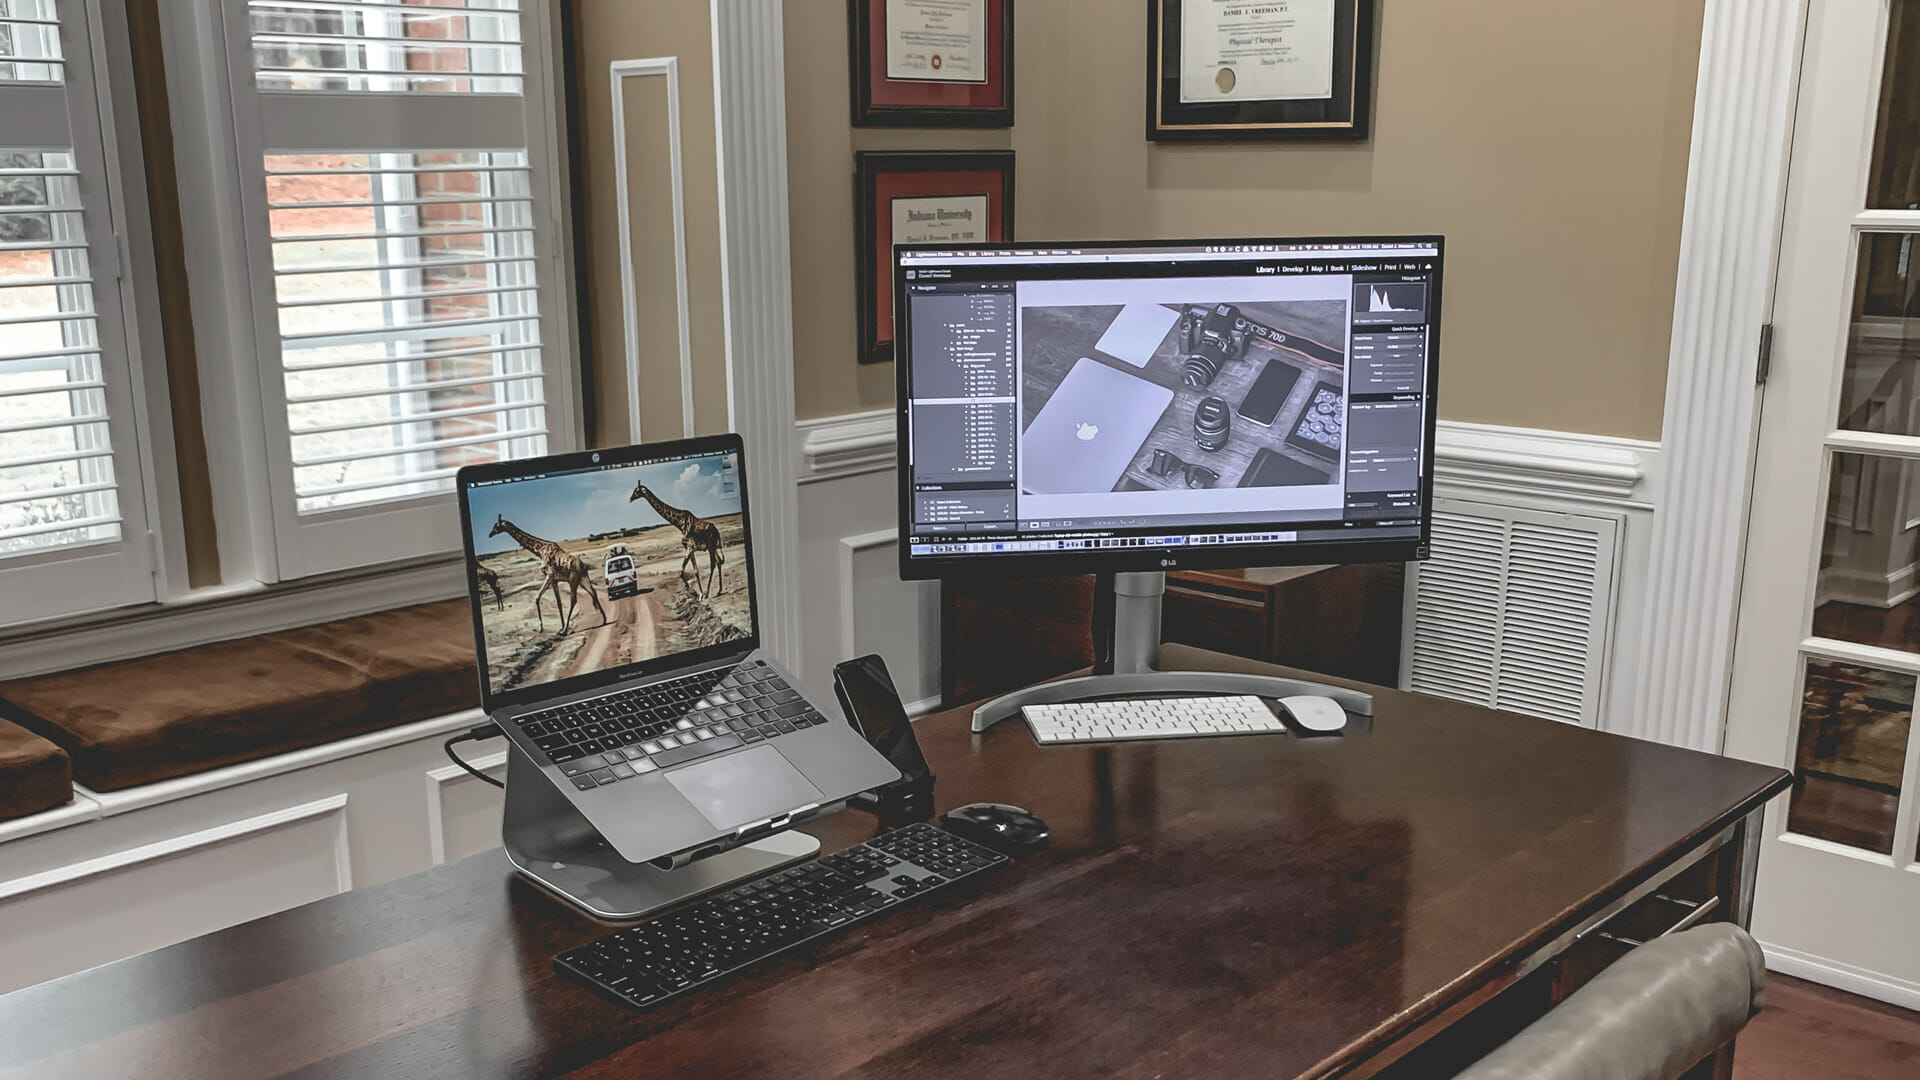 Home Office Desk Cable Management - Daniel Vreeman